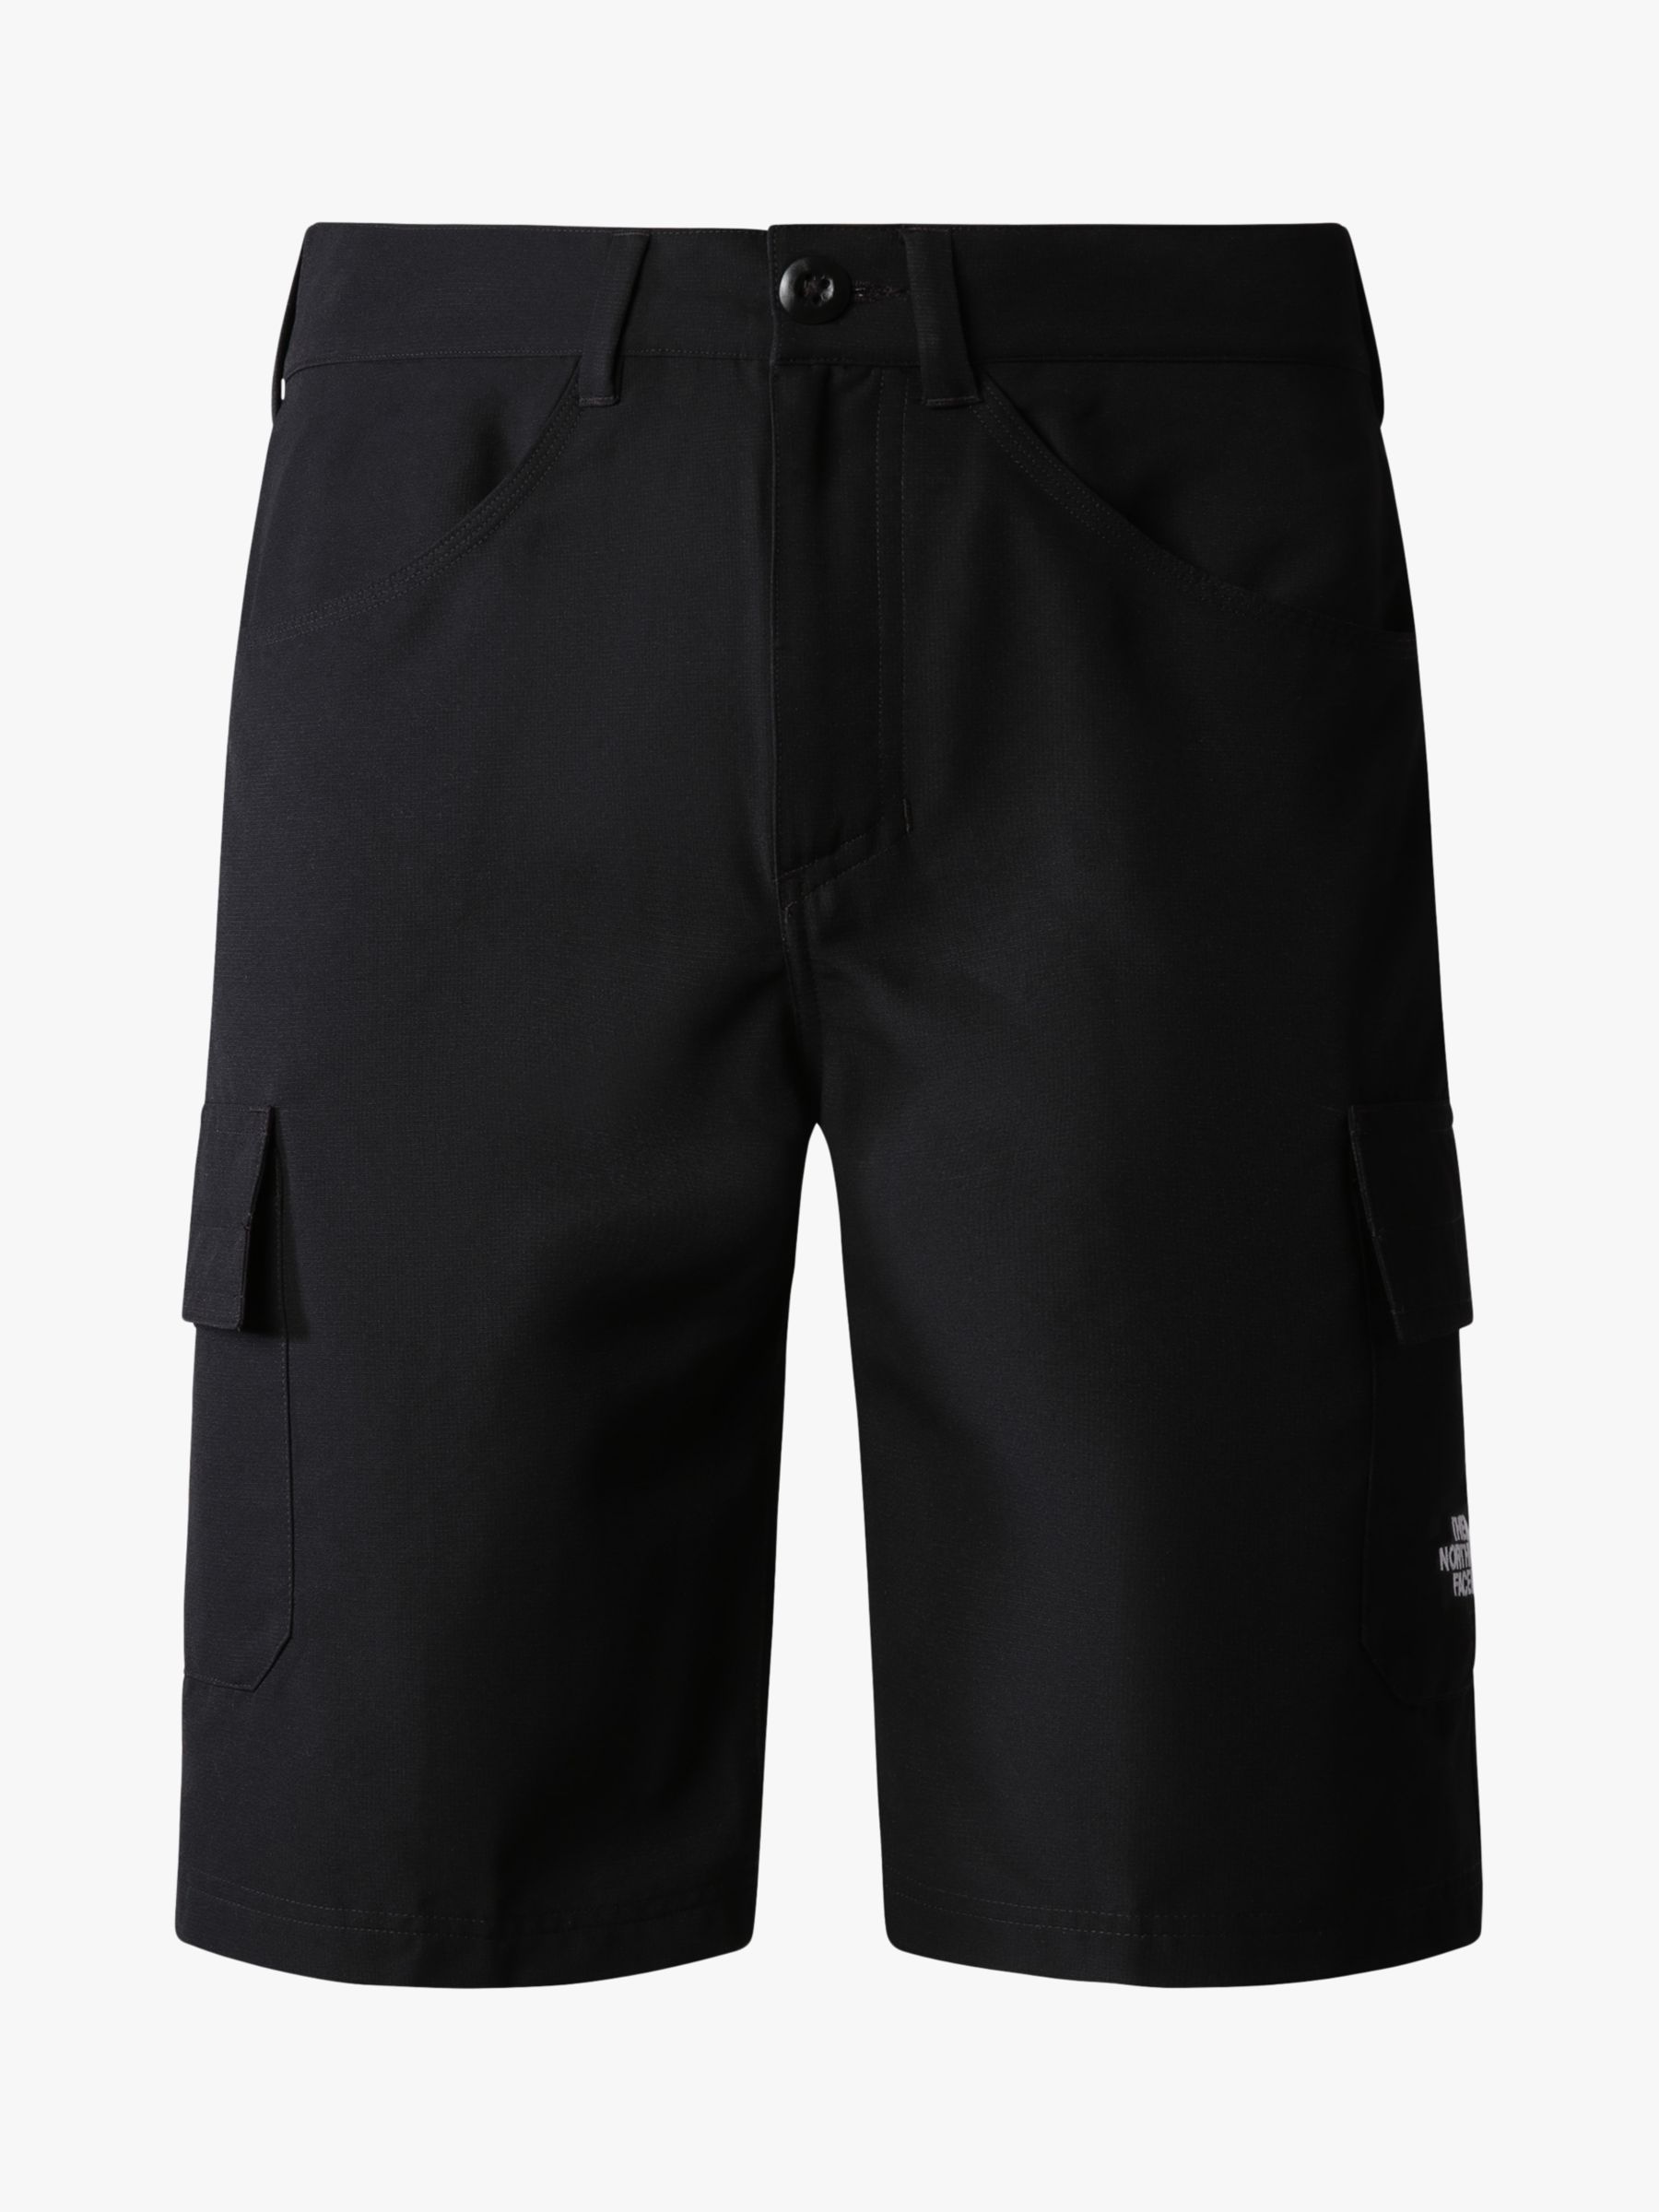 The North Face Horizon Circular Shorts, Black, XL